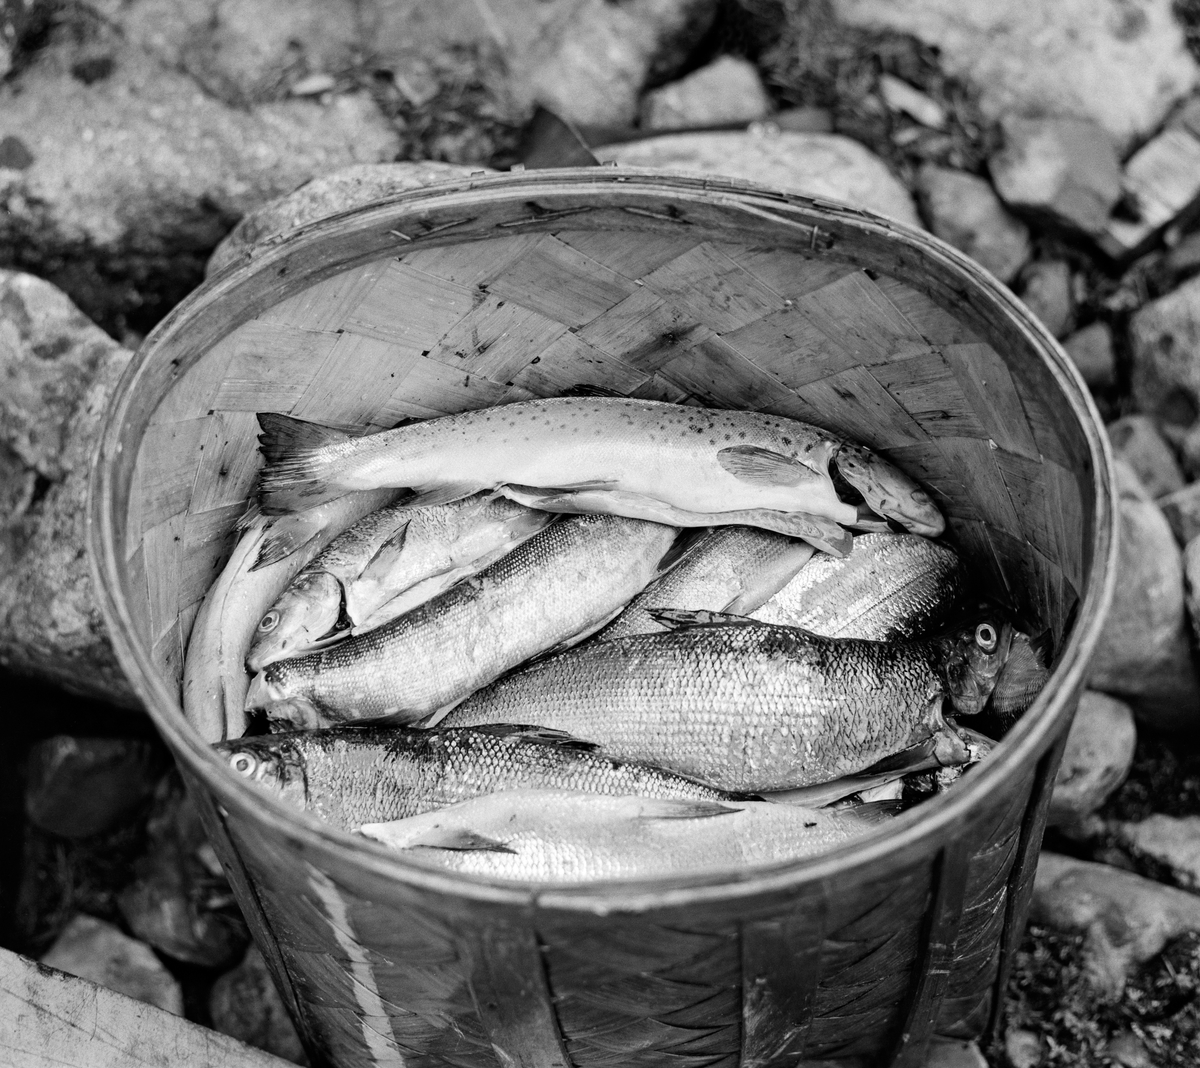 Oval sponkorg med fisk som er fanget ved Isterfossen mellom innsjøene Isteren og Galtsjøen i Engerdal i Hedmark.  I korga ligger det både sik og ørret.  Korga var antakelig lagd lokalt, av Osvald Kolbu.  Isterfossen er en populær lokalitet for sportsfiskere.  Fotografiet er tatt i august 1966. 